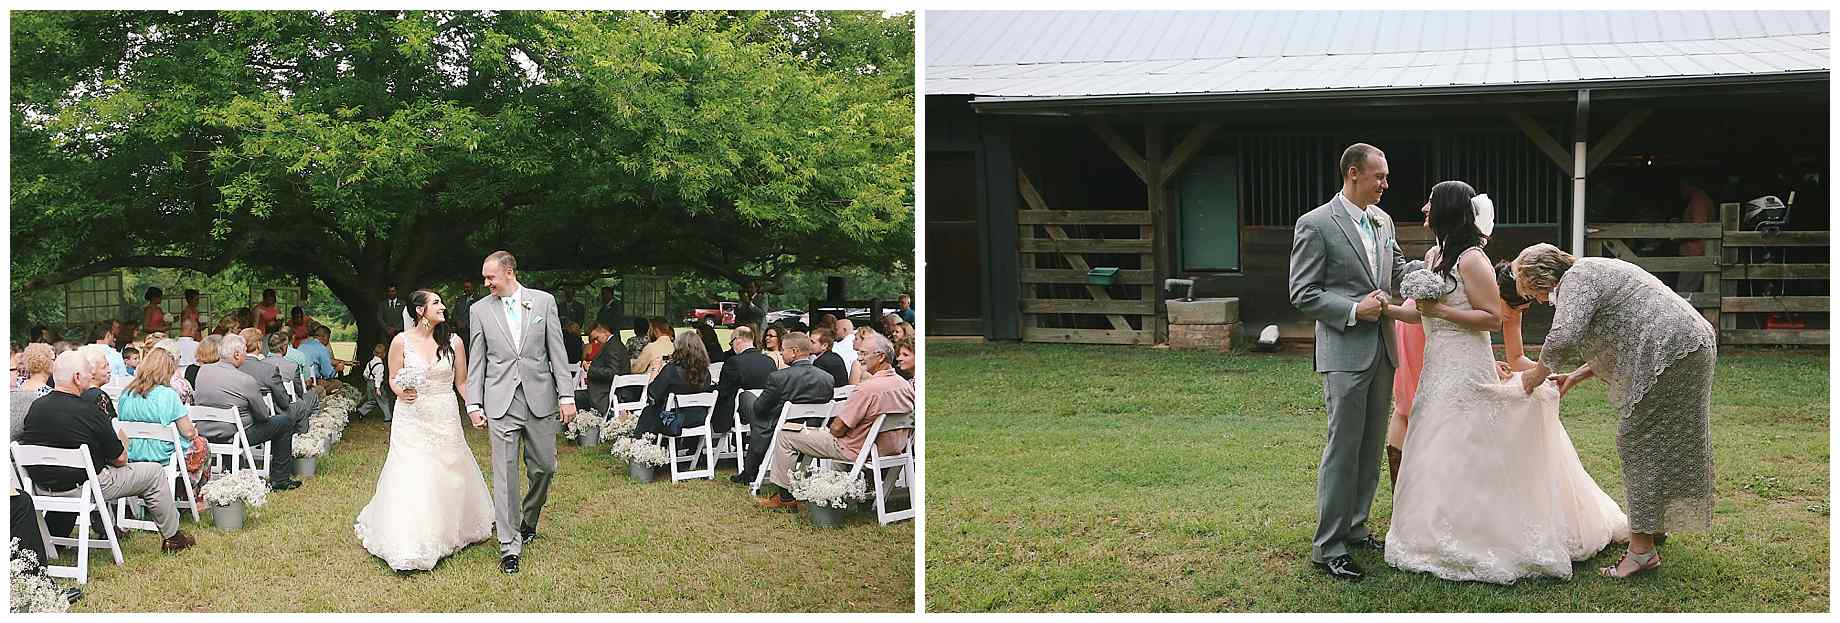 teaberry-farm-wedding-photos-17